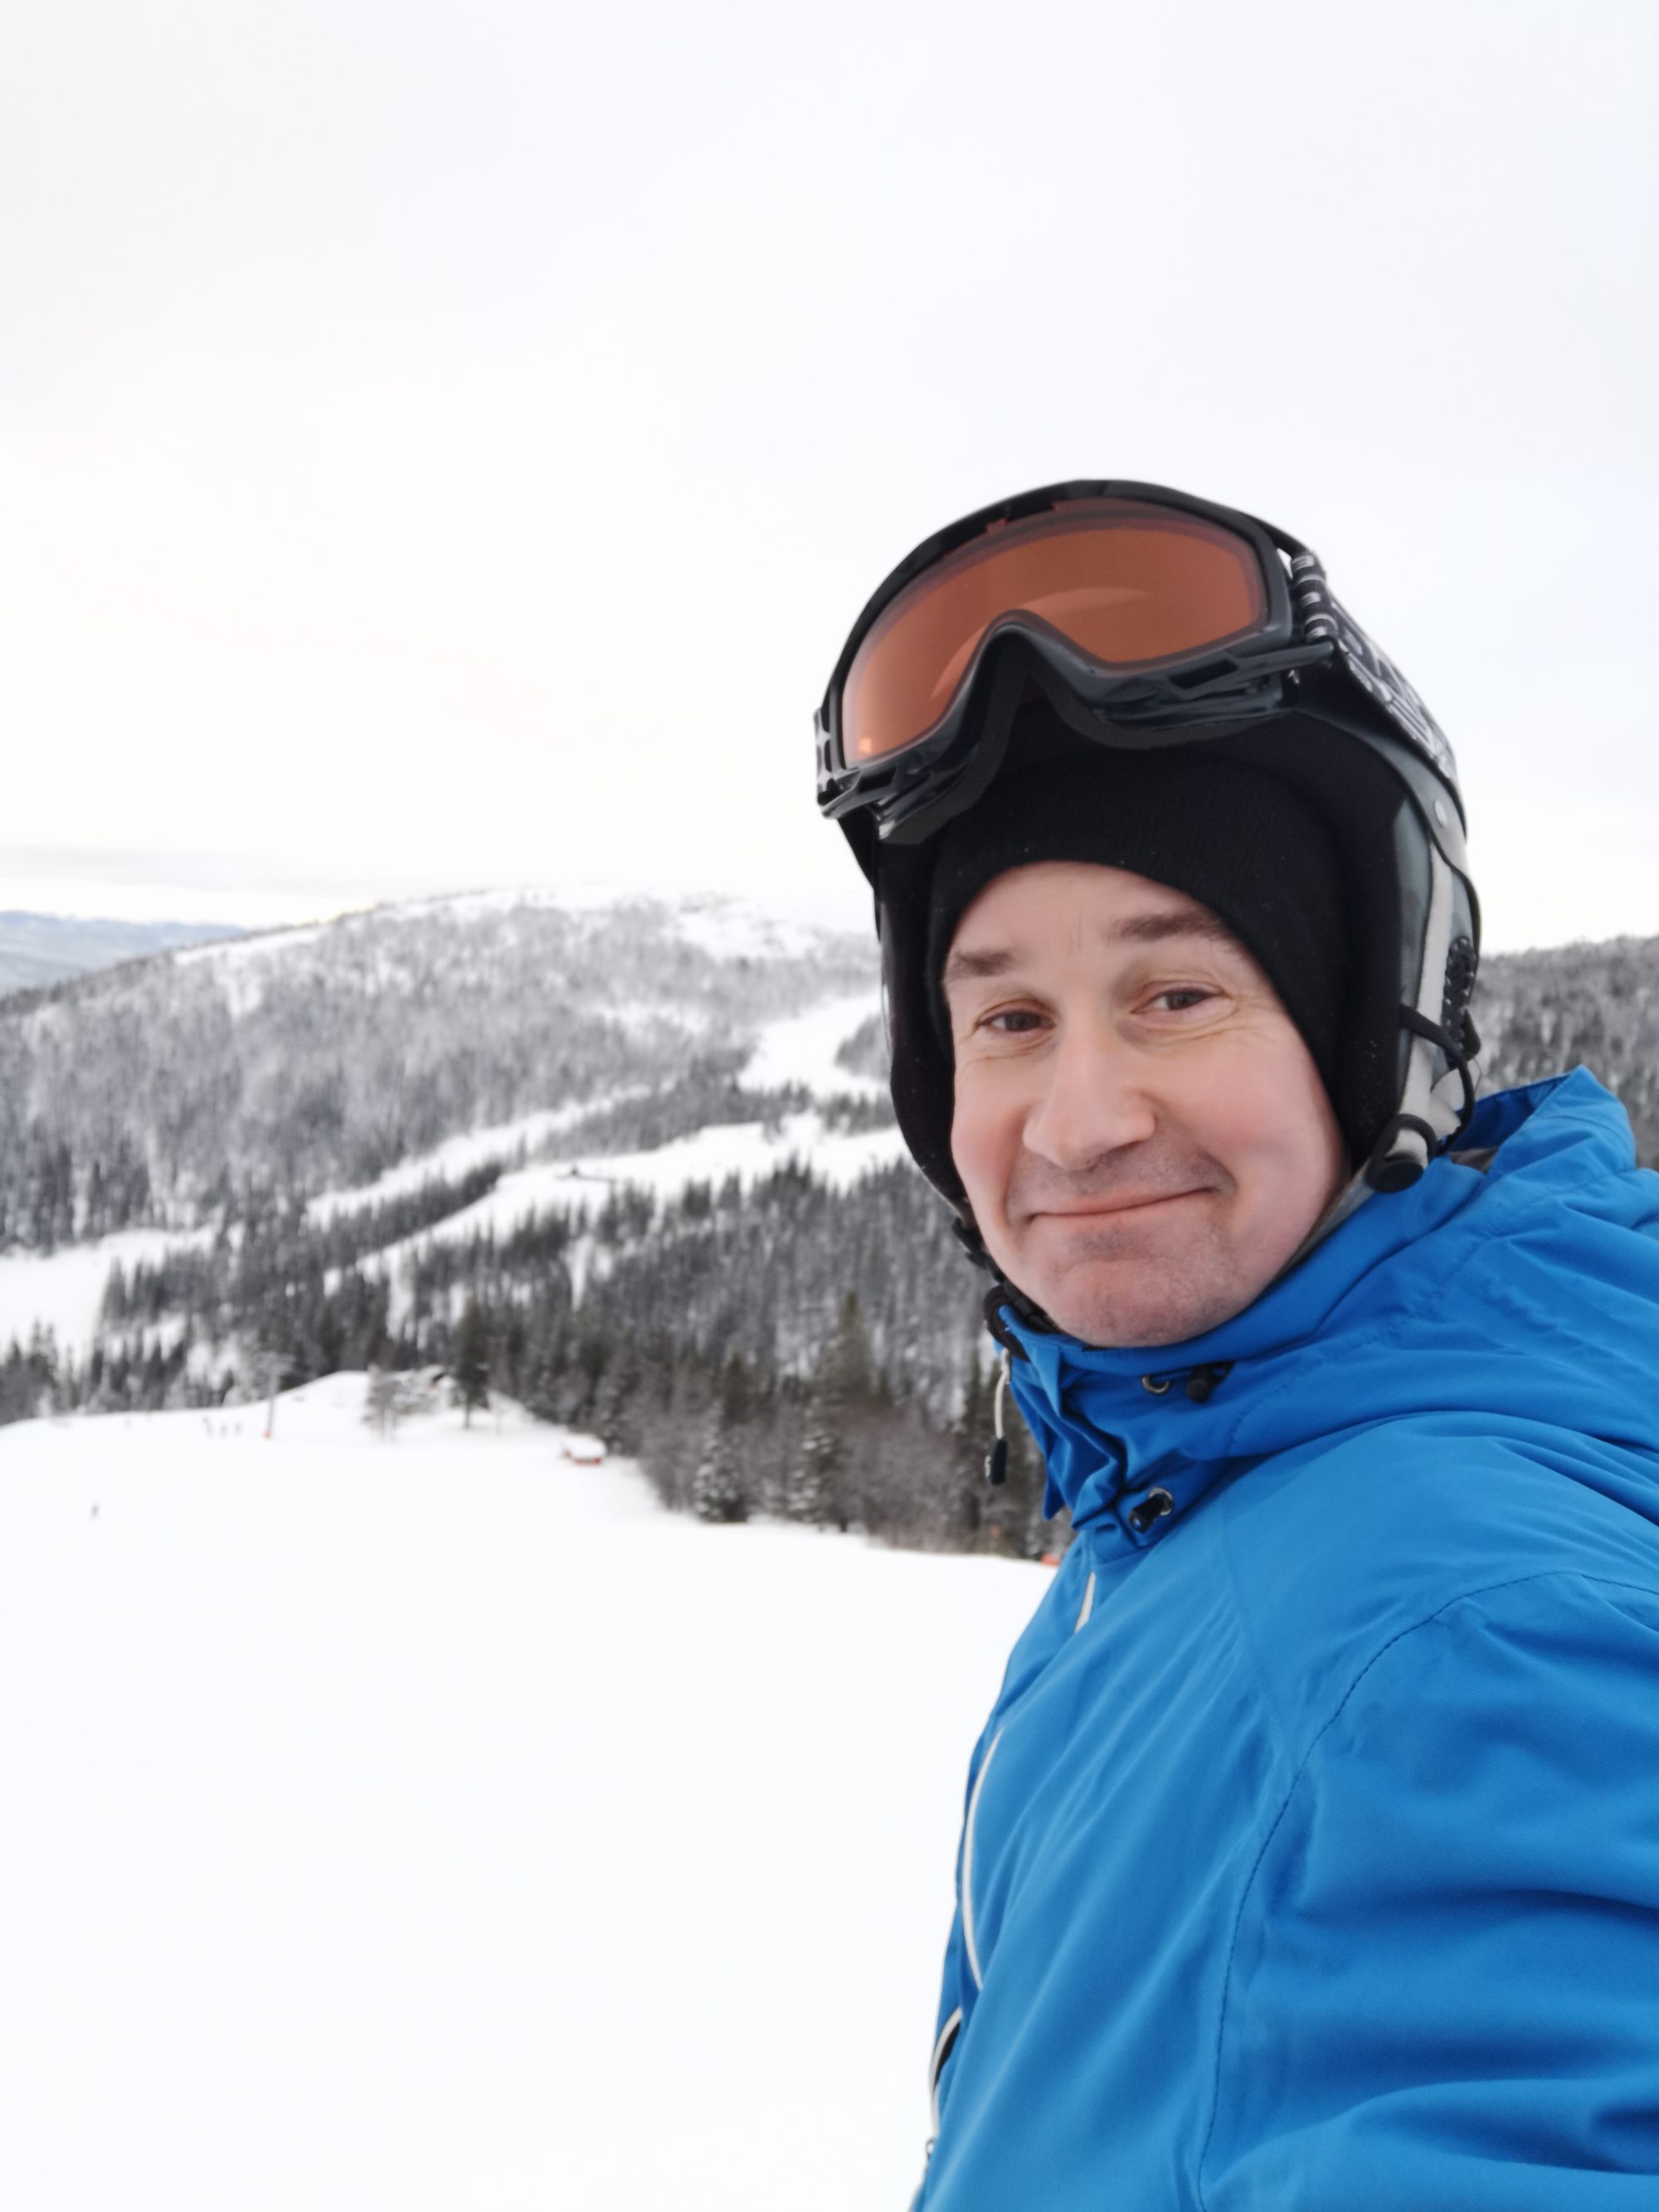 Hyra skidor i Åre med rabatt